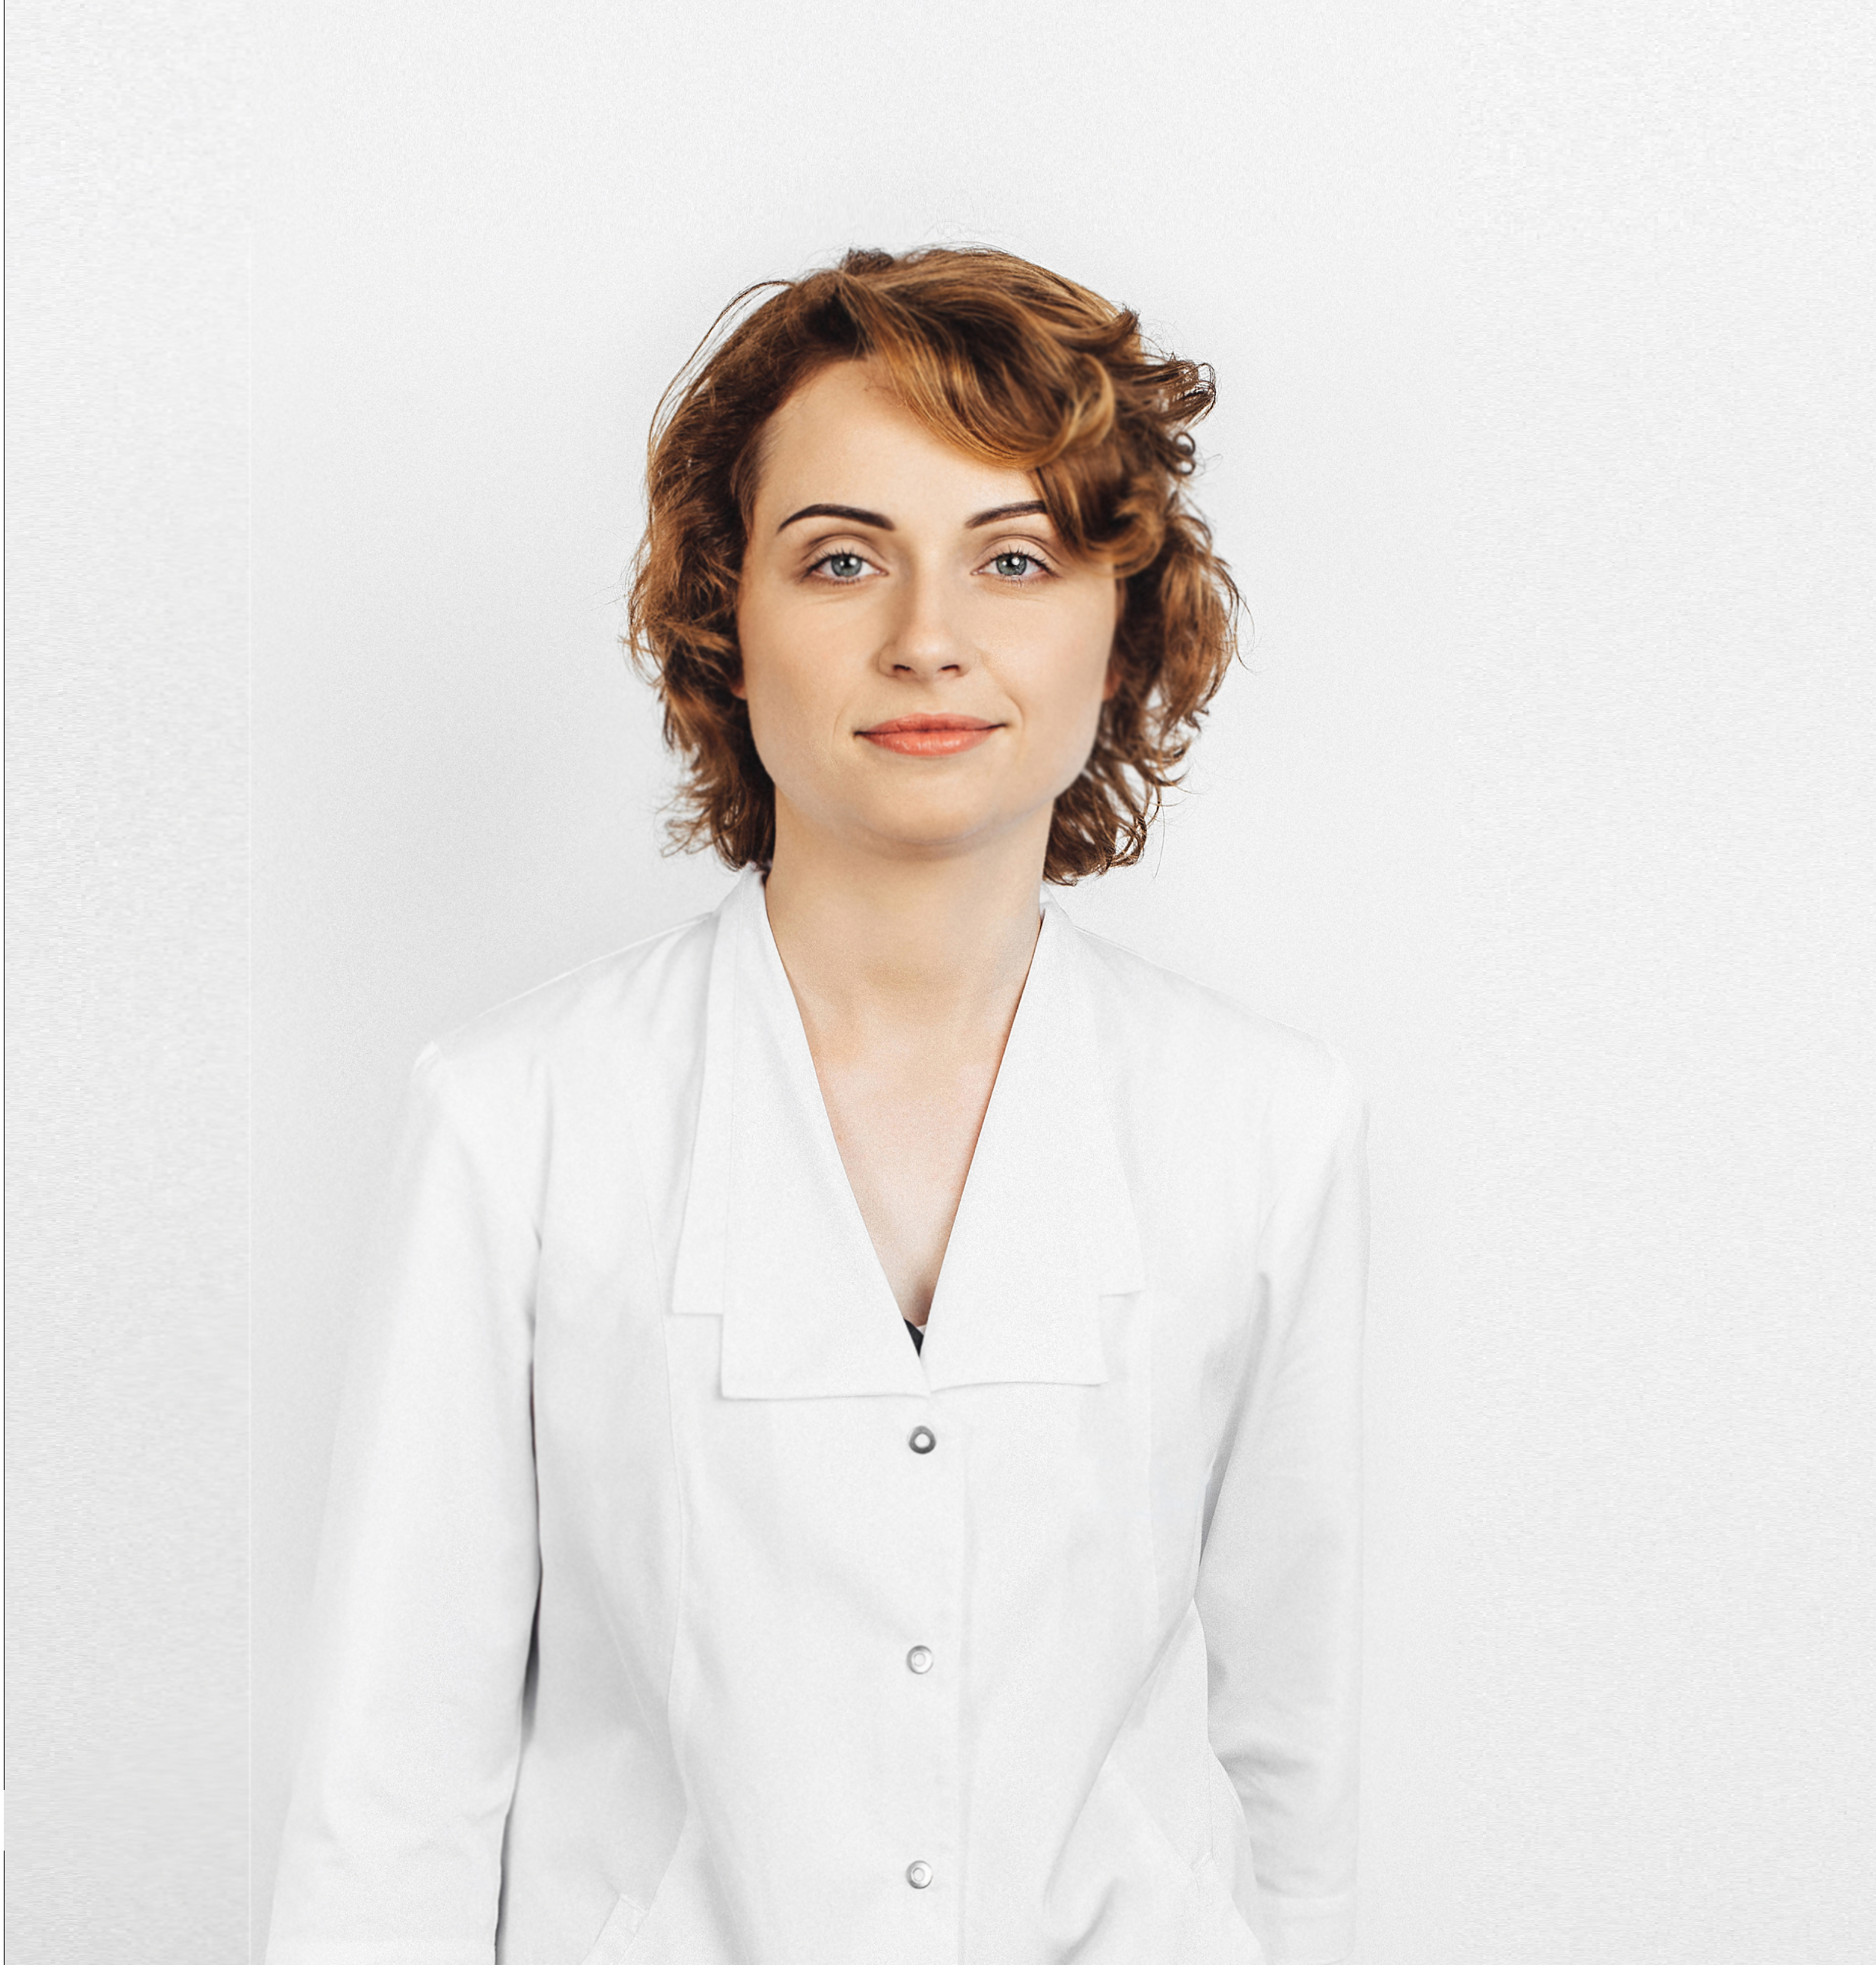 Laura Tamašauskienė MD, PhD